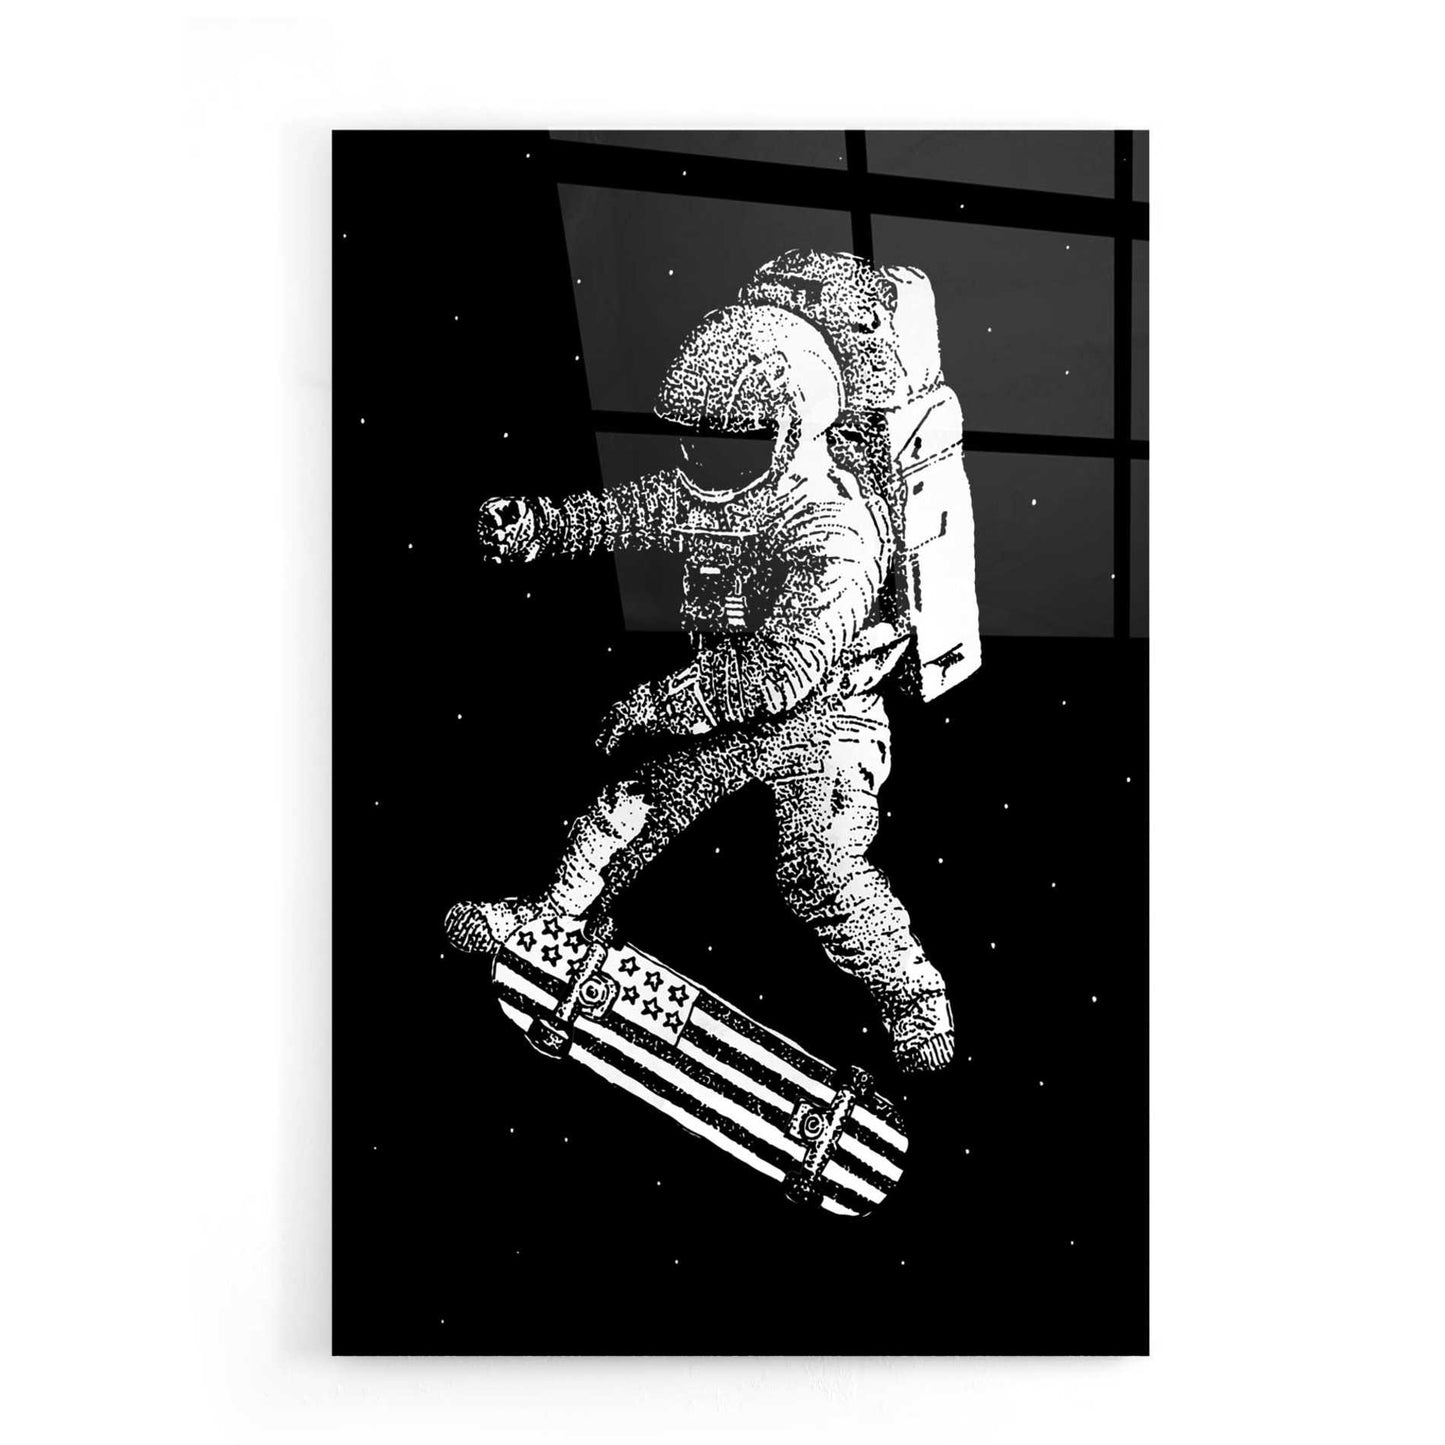 Epic Art 'Kickflip in Space' by Robert Farkas, Acrylic Glass Wall Art,16x24